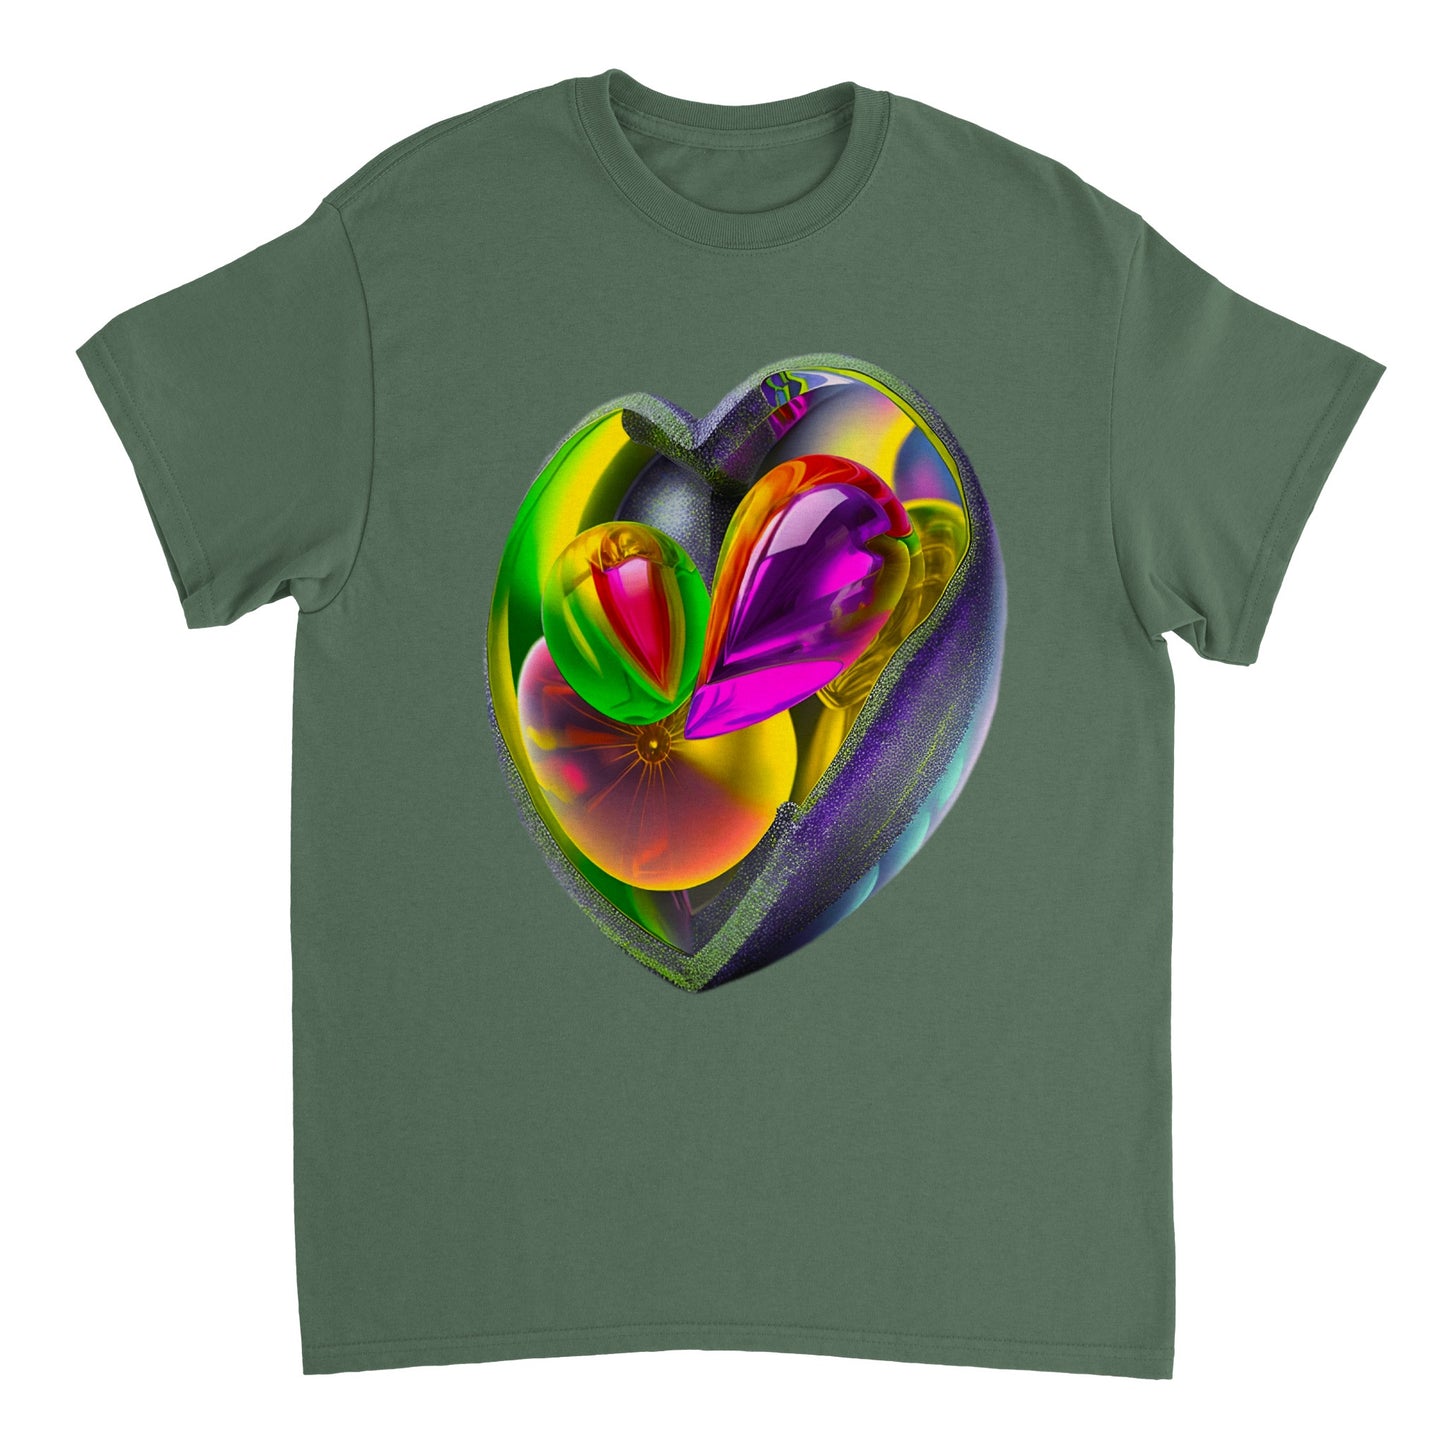 Love Heart - Heavyweight Unisex Crewneck T-shirt 49